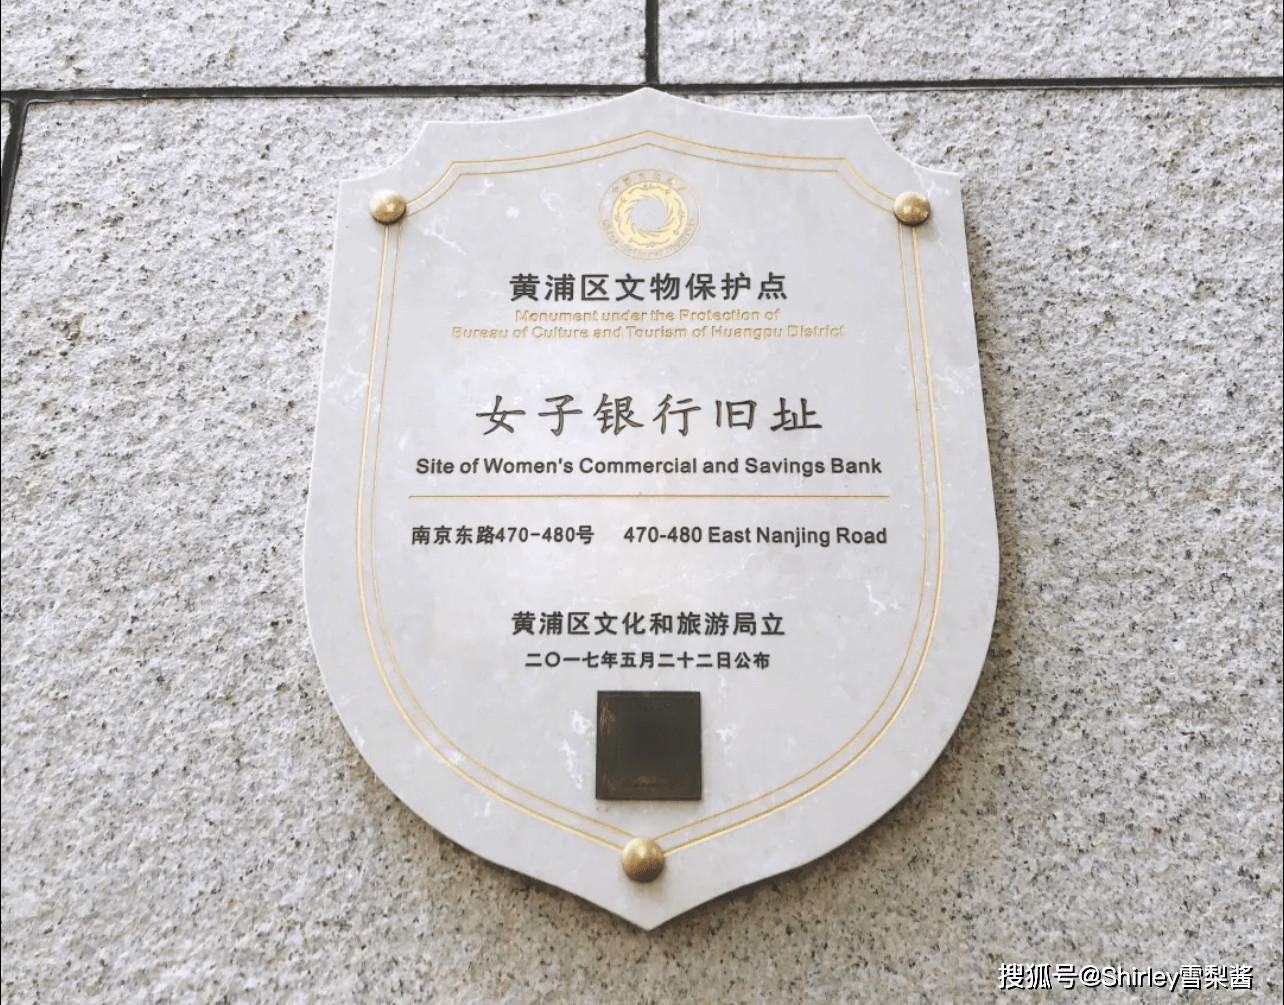 人来人往的南京路，藏着中国第一家女子银行，创办人竟是曾被前夫嫌弃的张幼仪